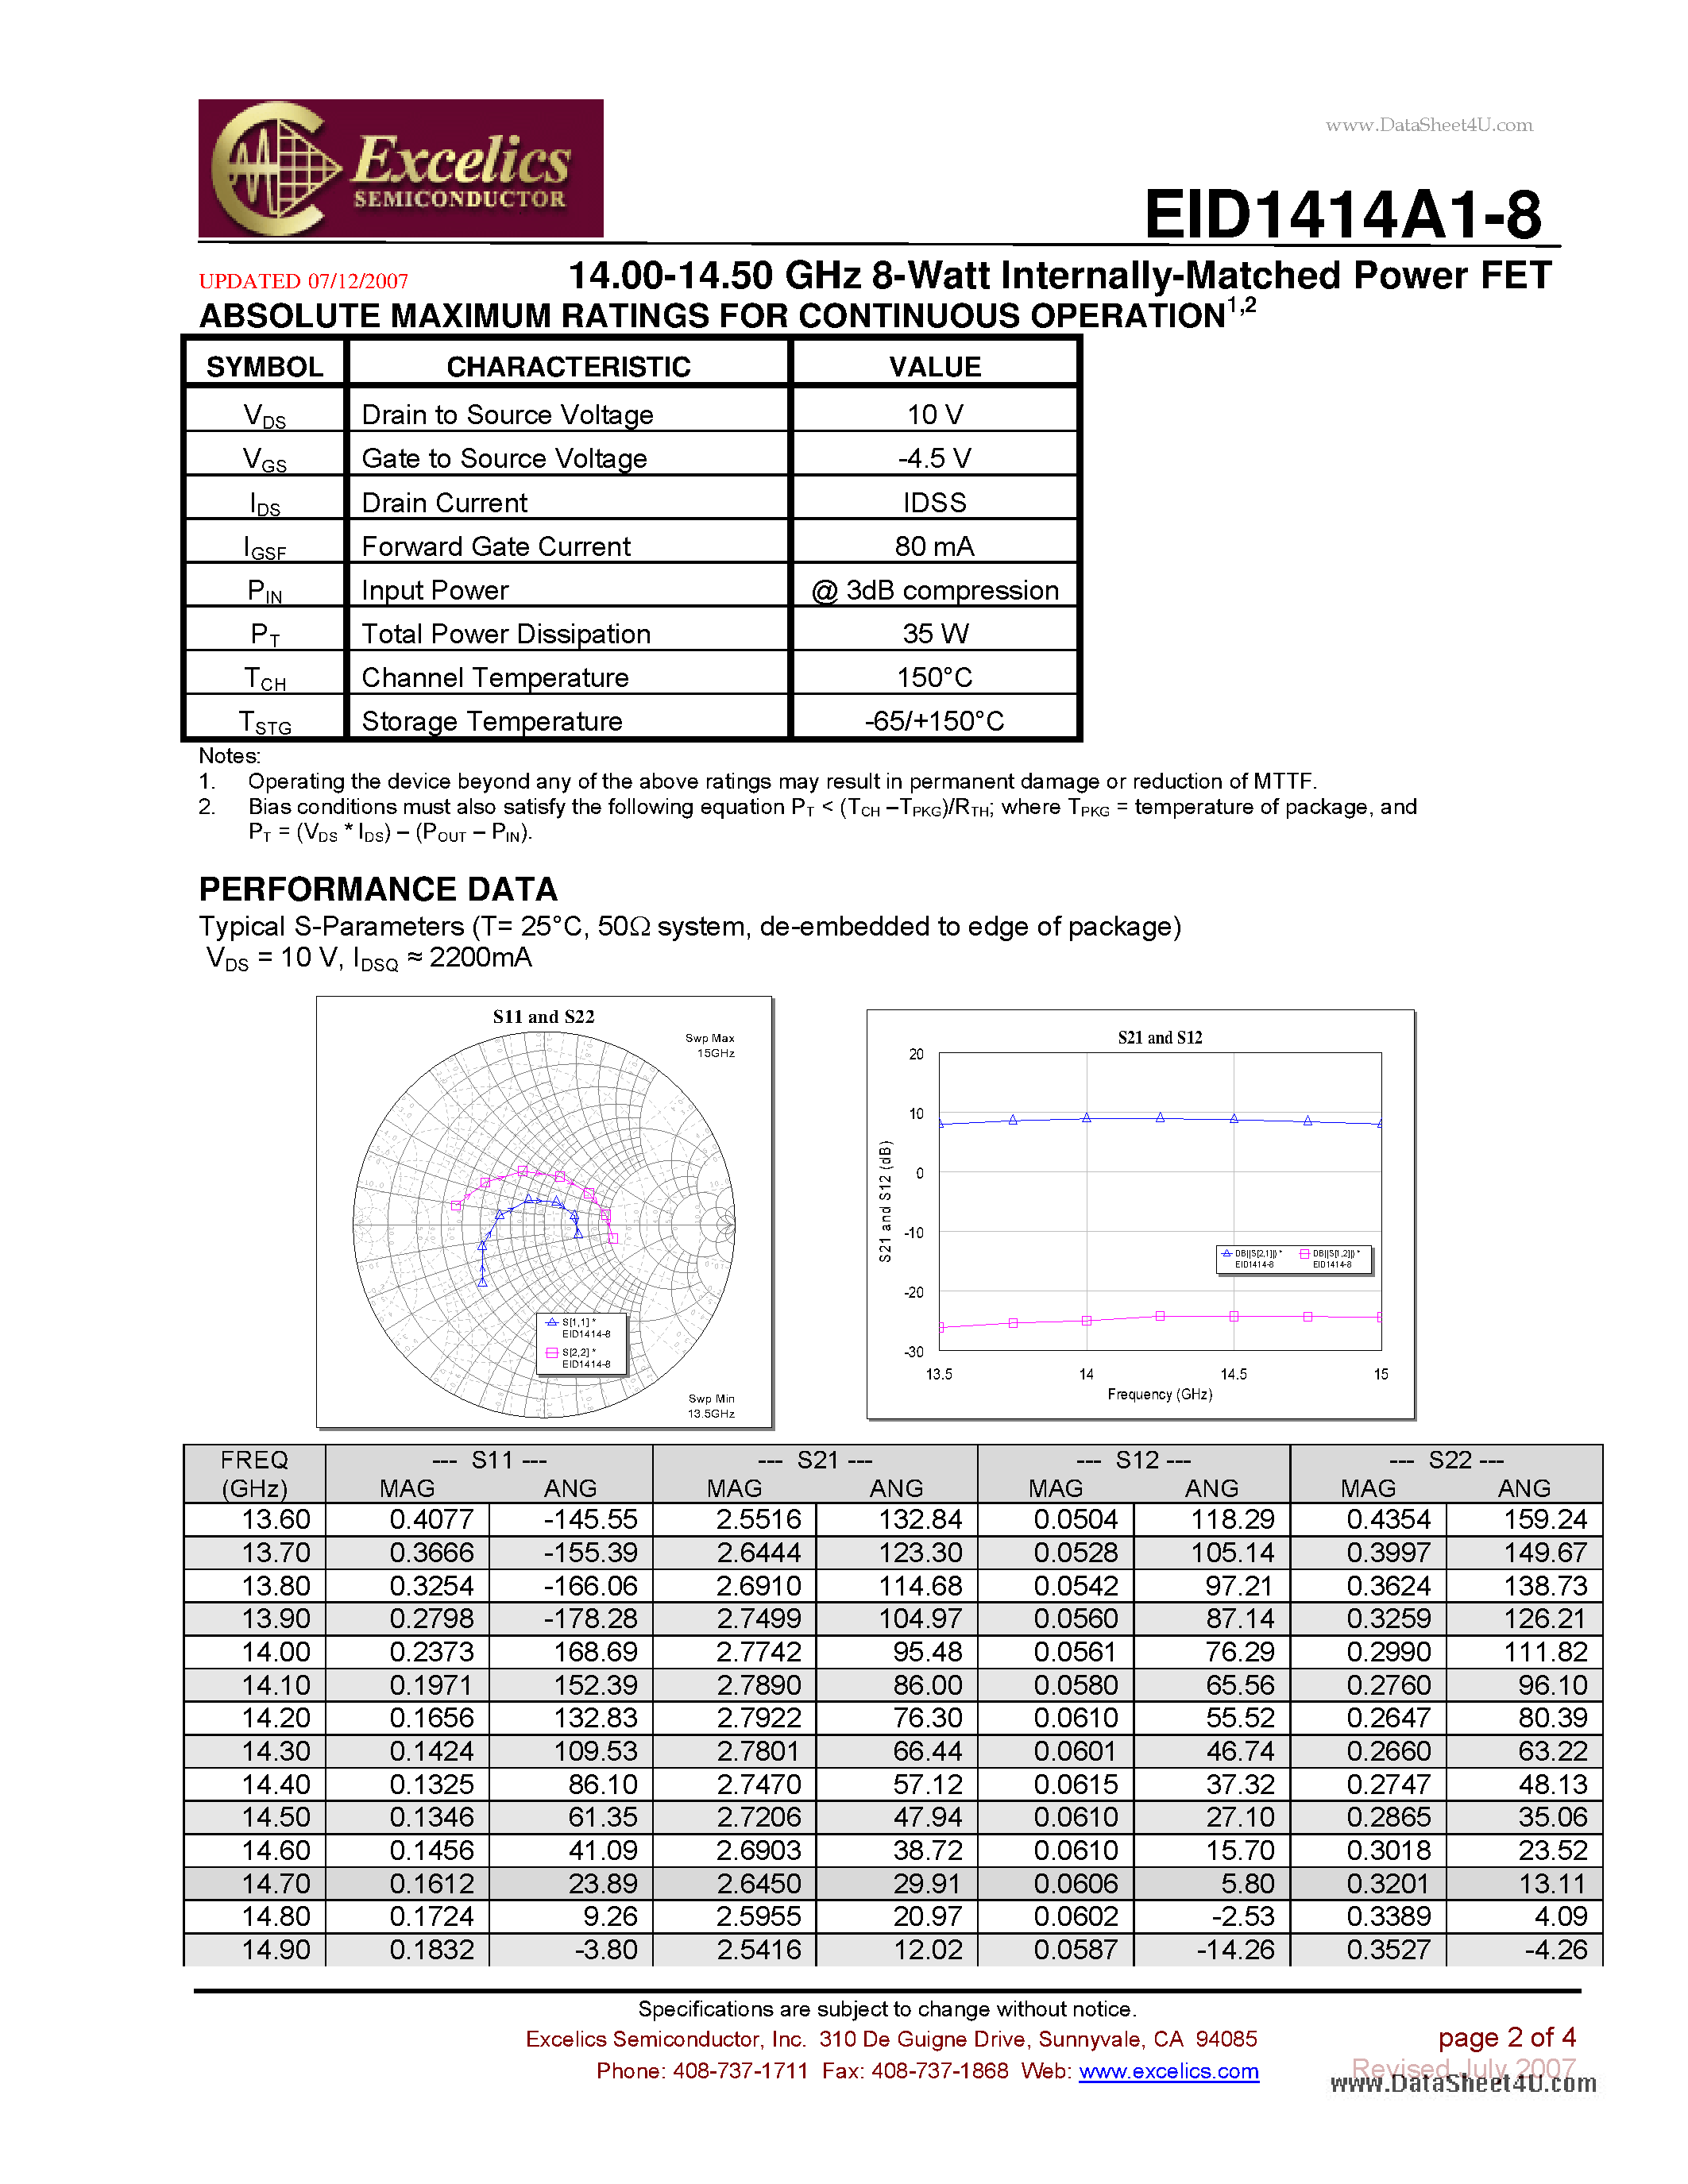 Даташит EID1414A1-8 - 14.00-14.50 GHz 8-Watt Internally-Matched Power FET страница 2